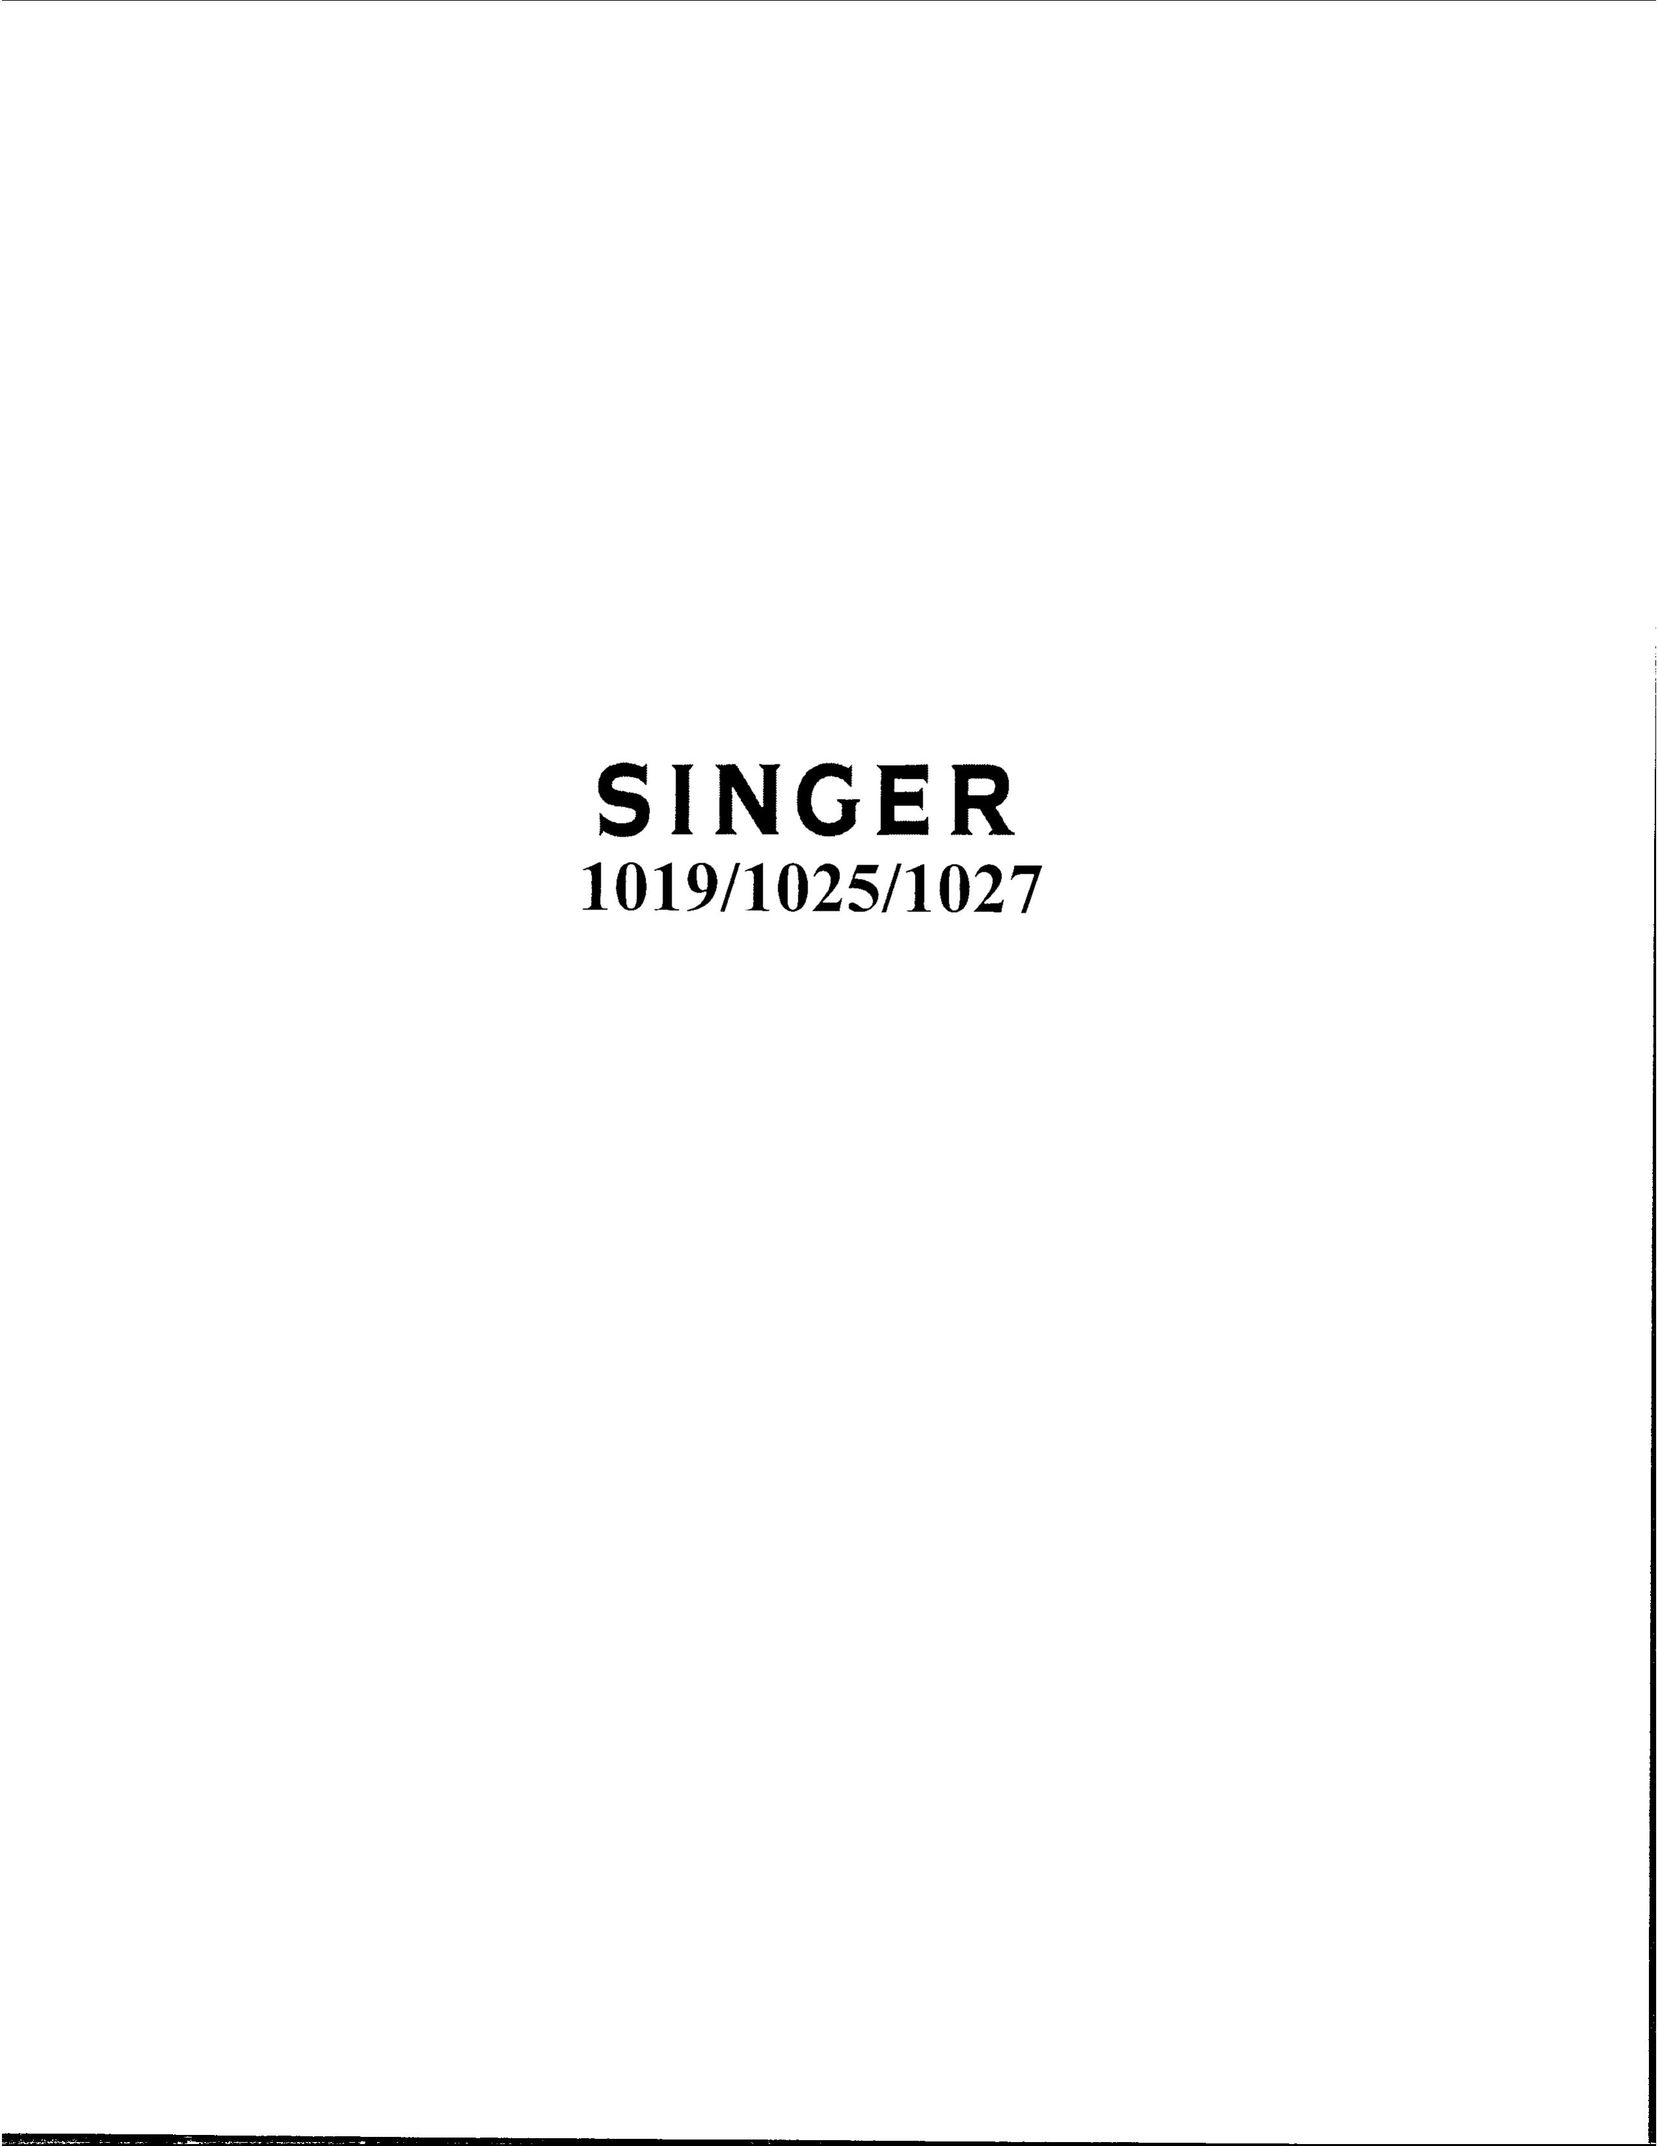 Singer 1019 Sewing Machine User Manual (Page 1)